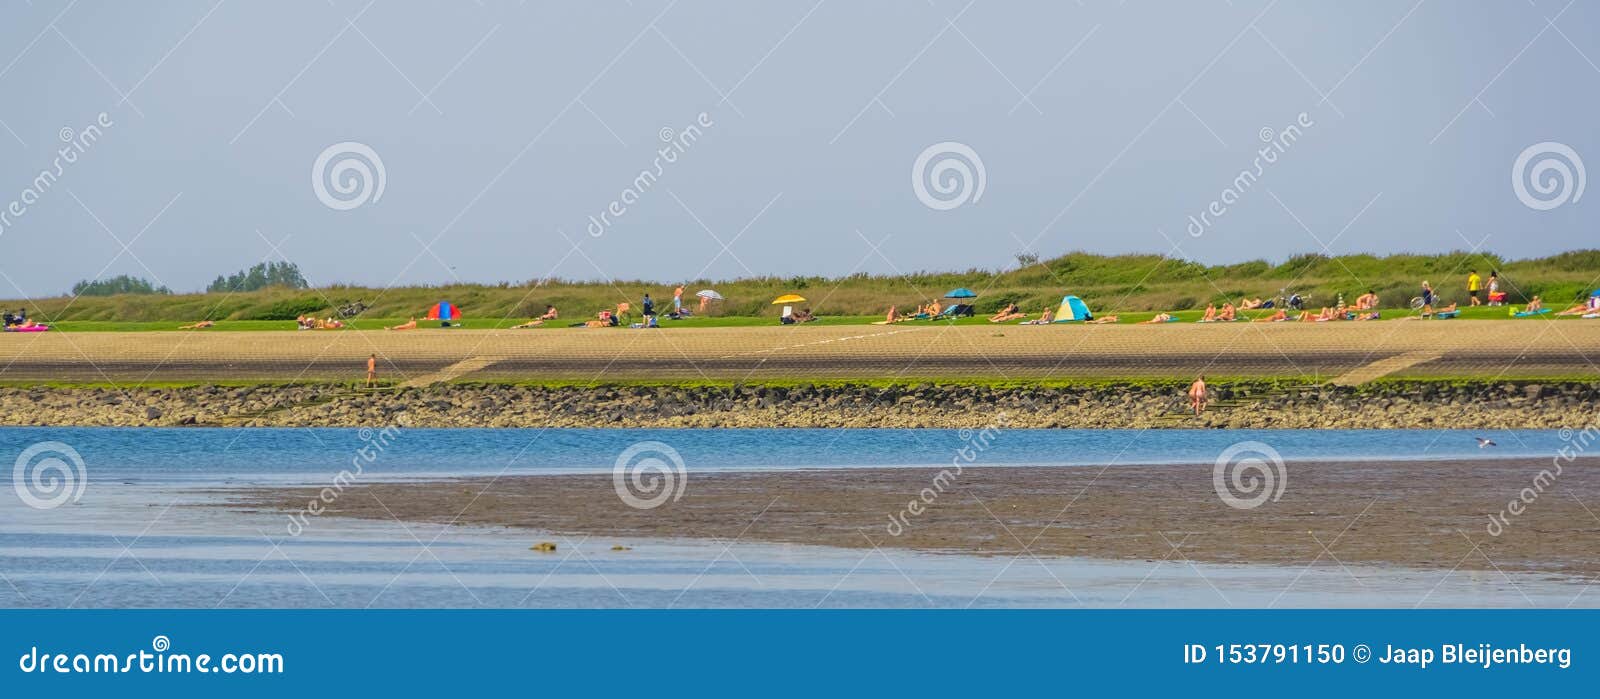 Holland nudist family beach